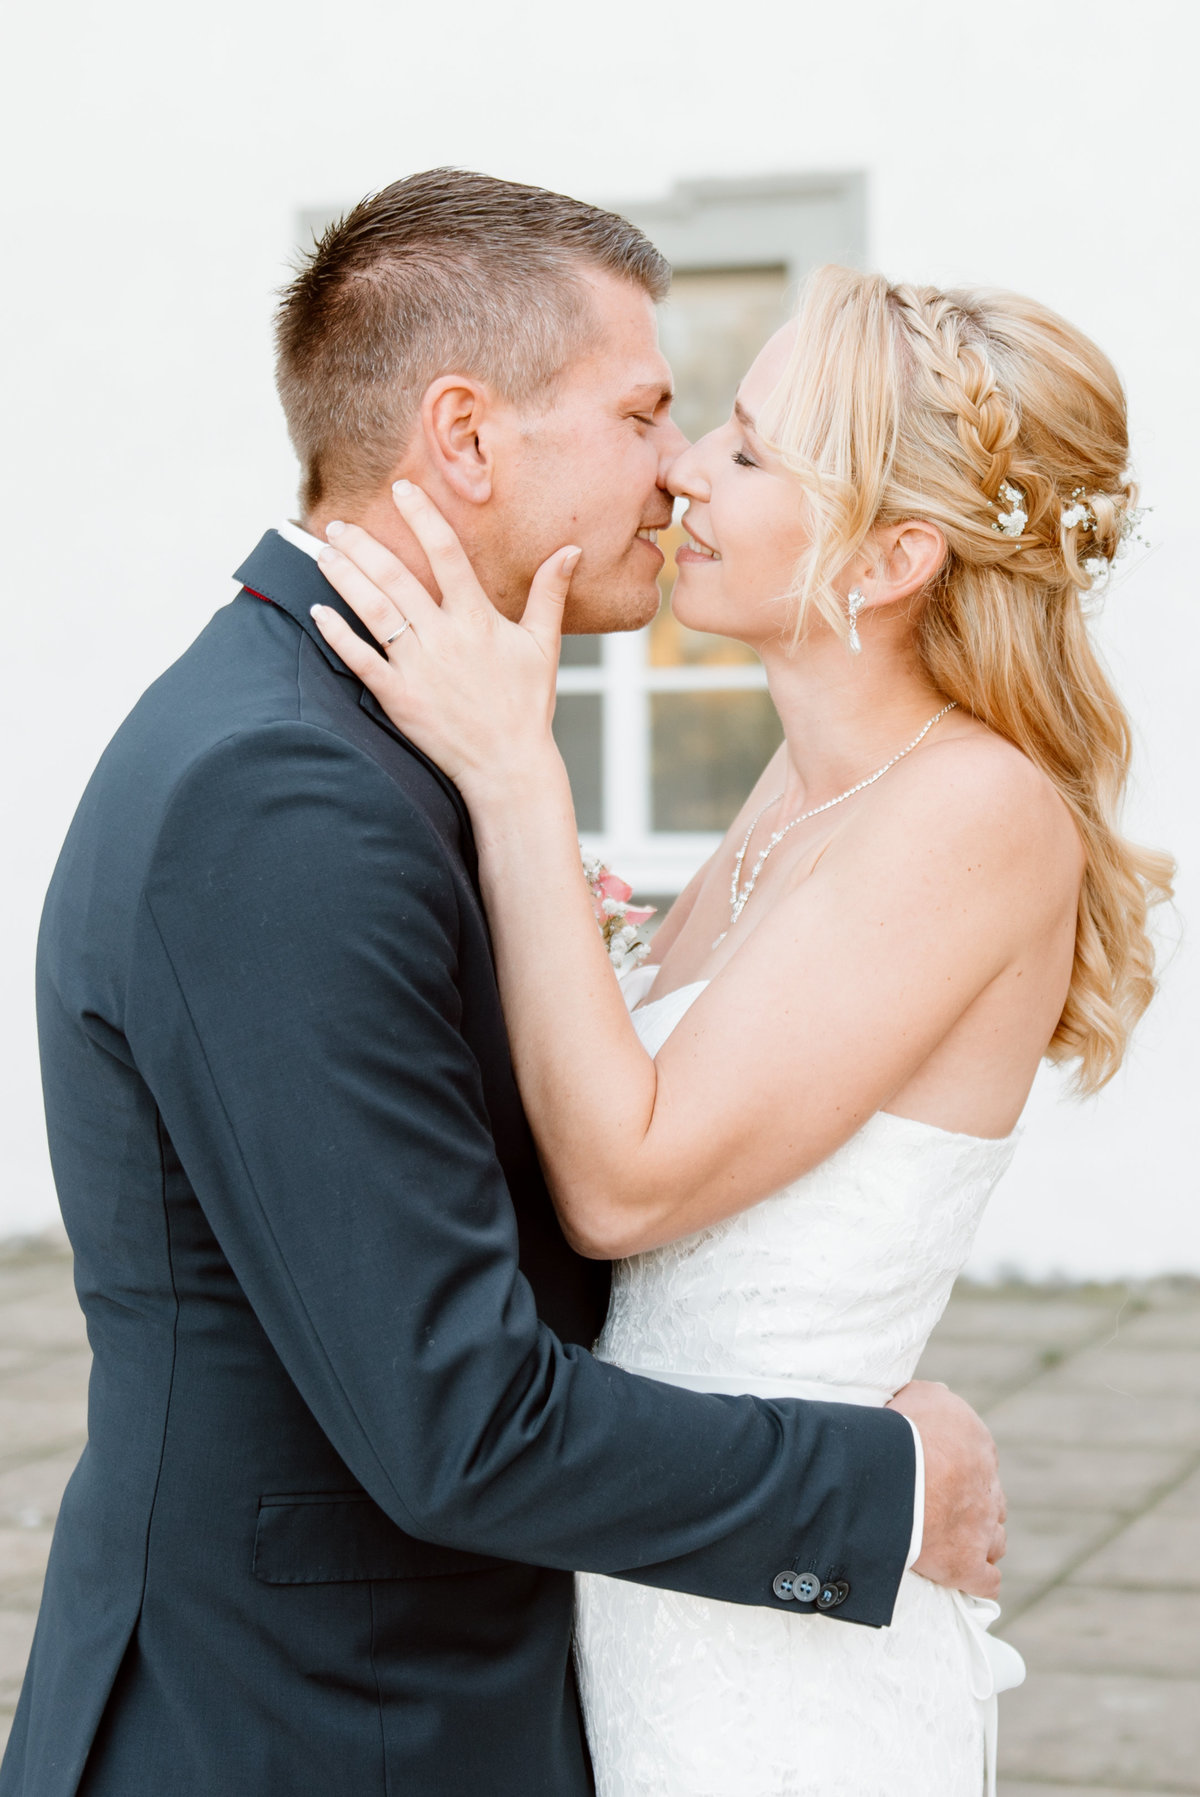 Leonie Leder | Hochzeitsfotografin aus Leidenschaft | Hochzeitsportraits - Hochzeitsreportage - Engagement - Verlobung - After Wedding | Augsburg Ulm Bayern Allgäu München